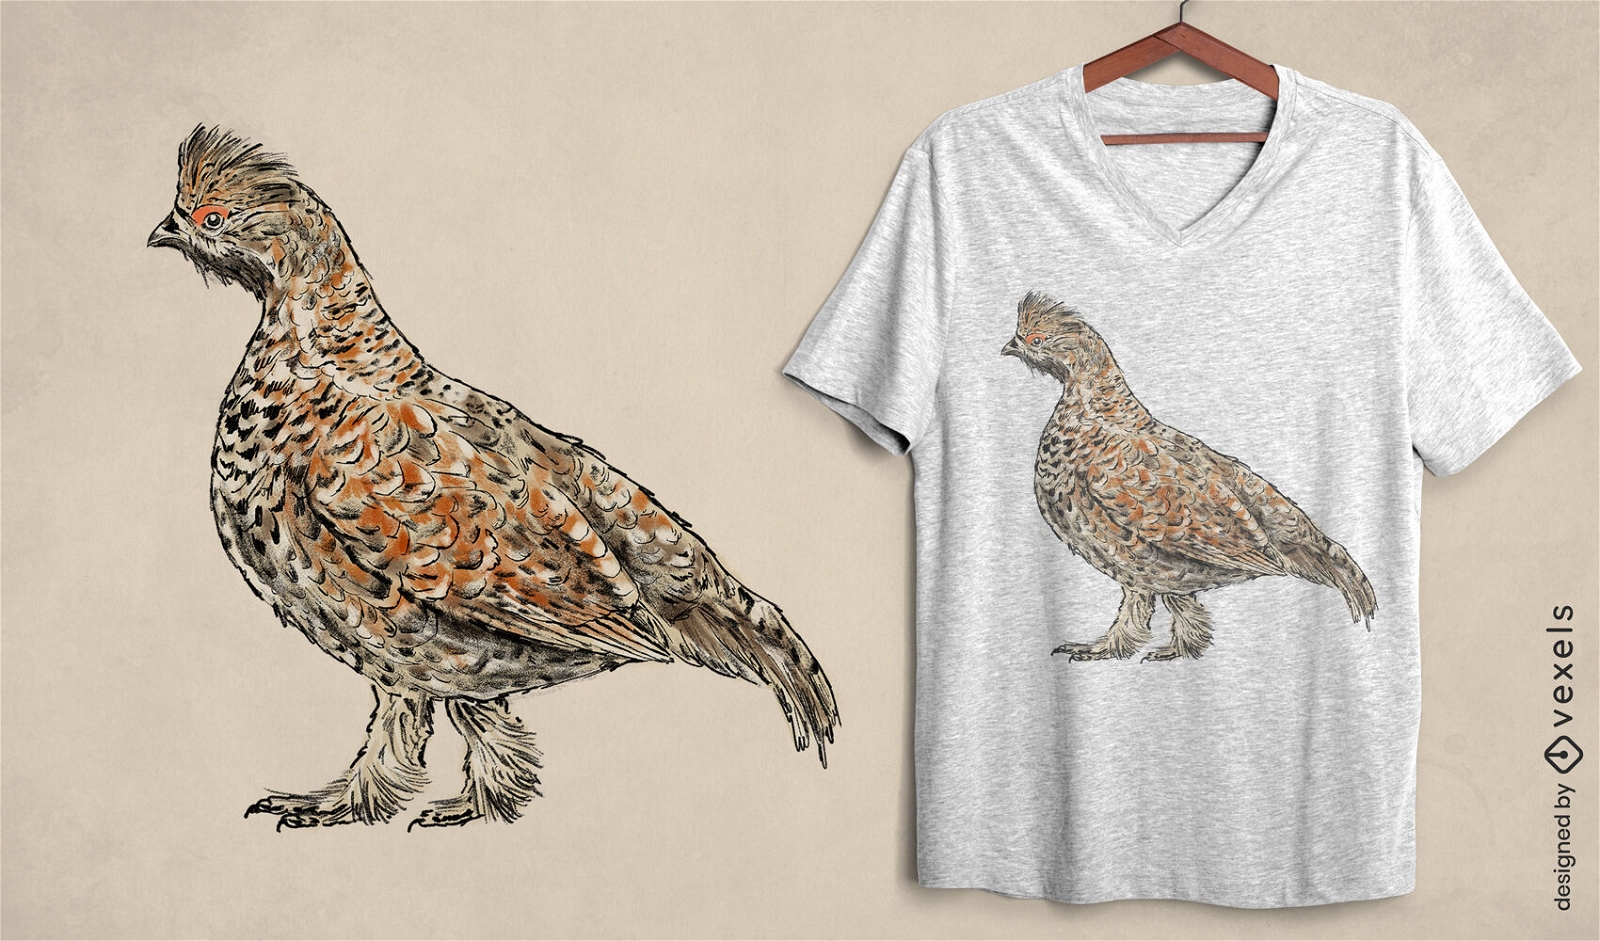 Hazel grouse t-shirt design